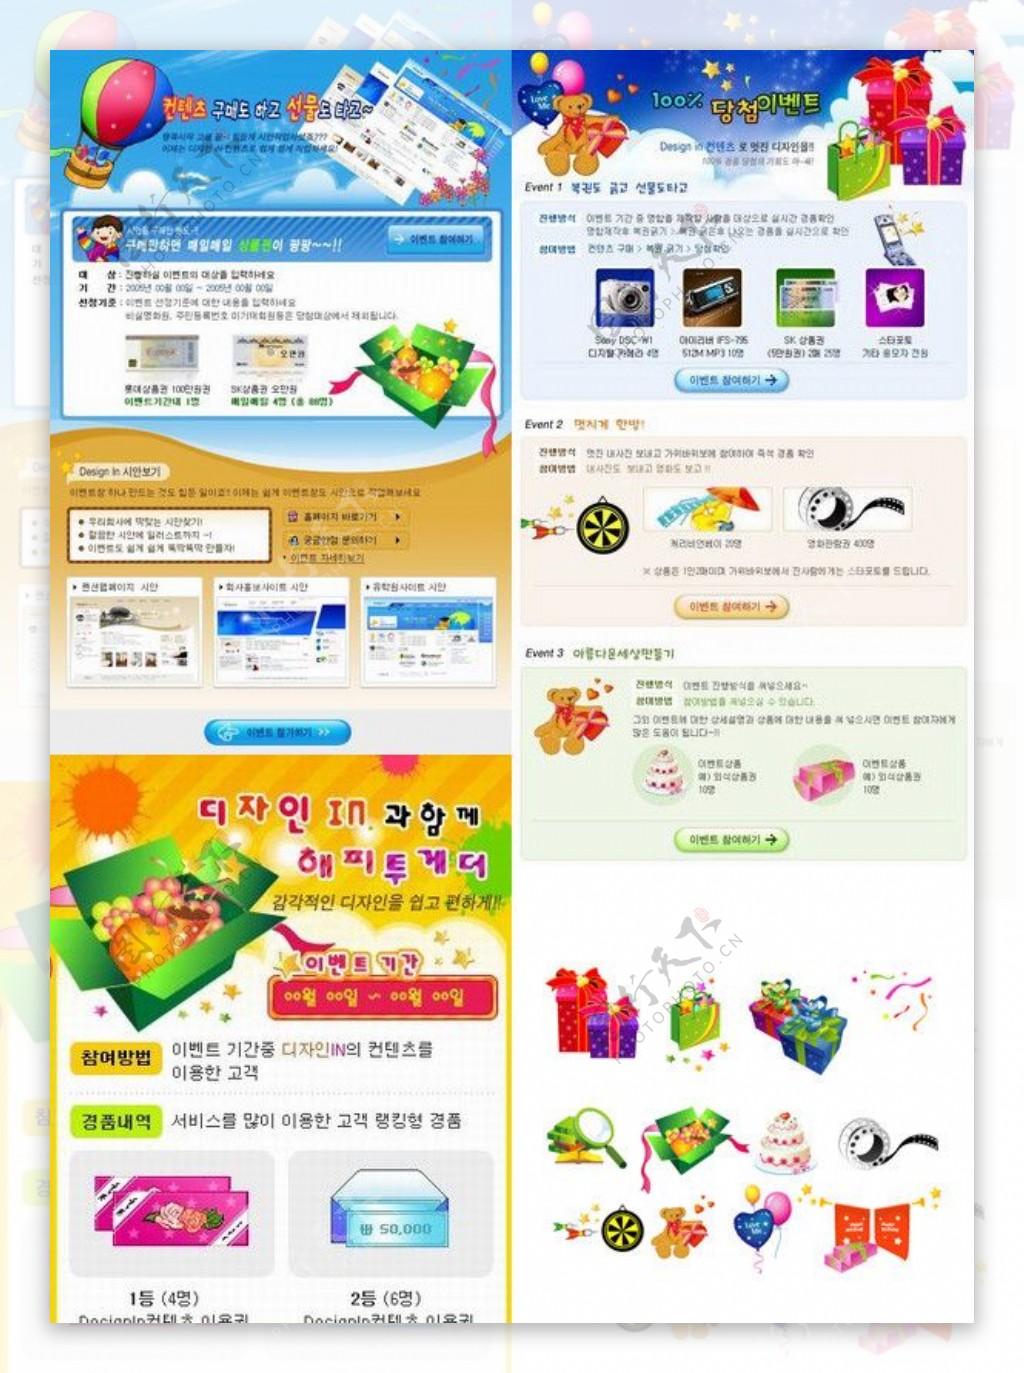 韩国节日礼物销售网站POP模板图片